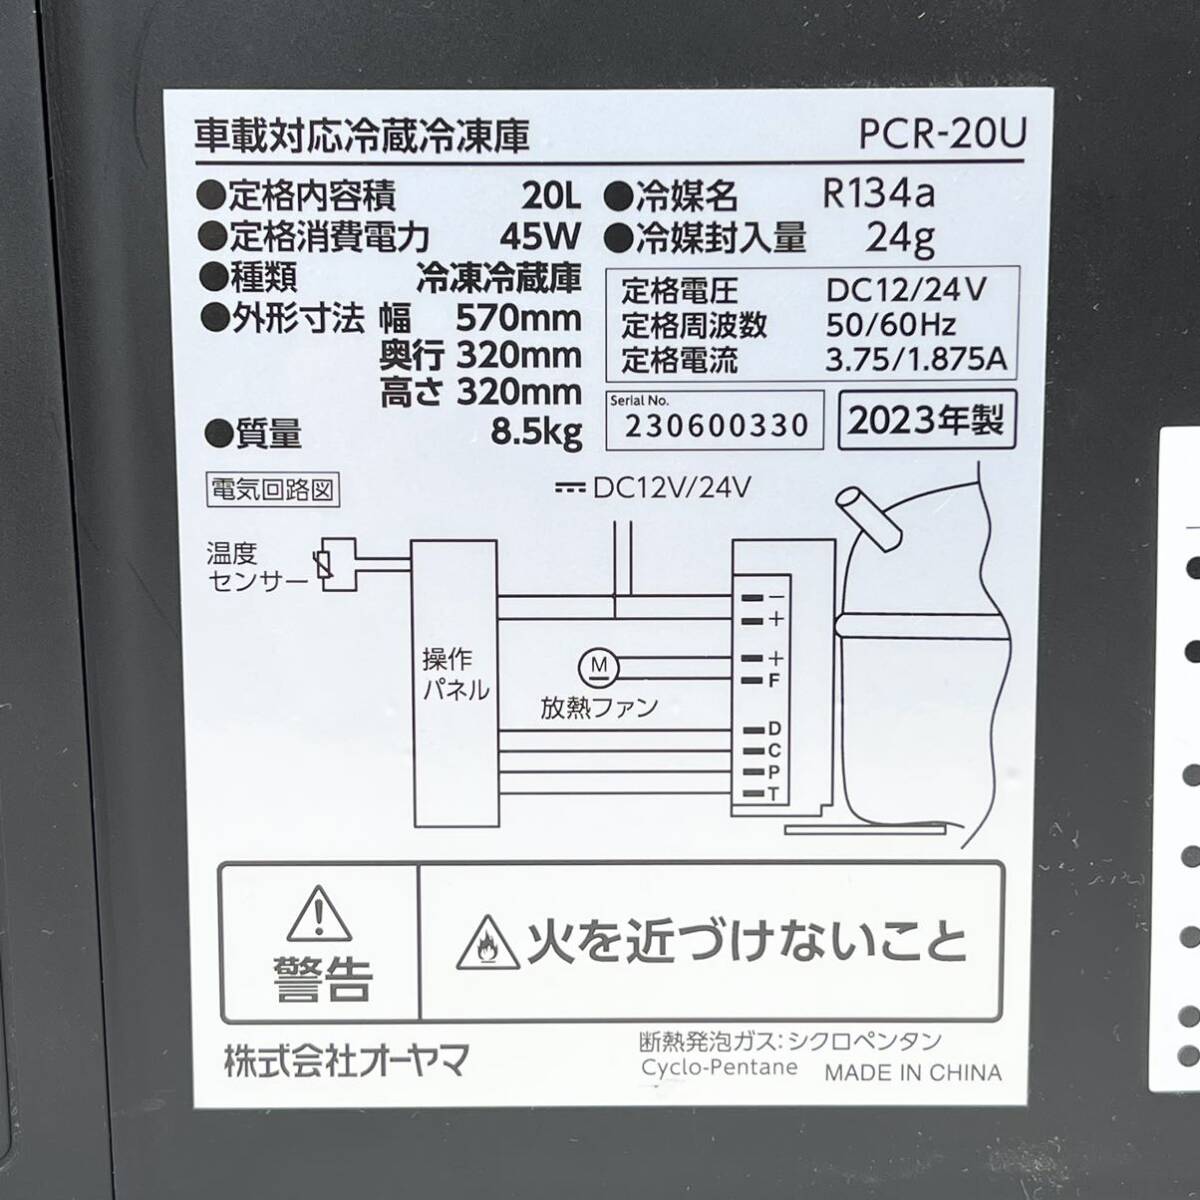 270* б/у товар 2023 год производства Iris o-yama автомобильный рефрижератор морозилка PCR-20U портативный холодильник 20L инструкция имеется рабочее состояние подтверждено *